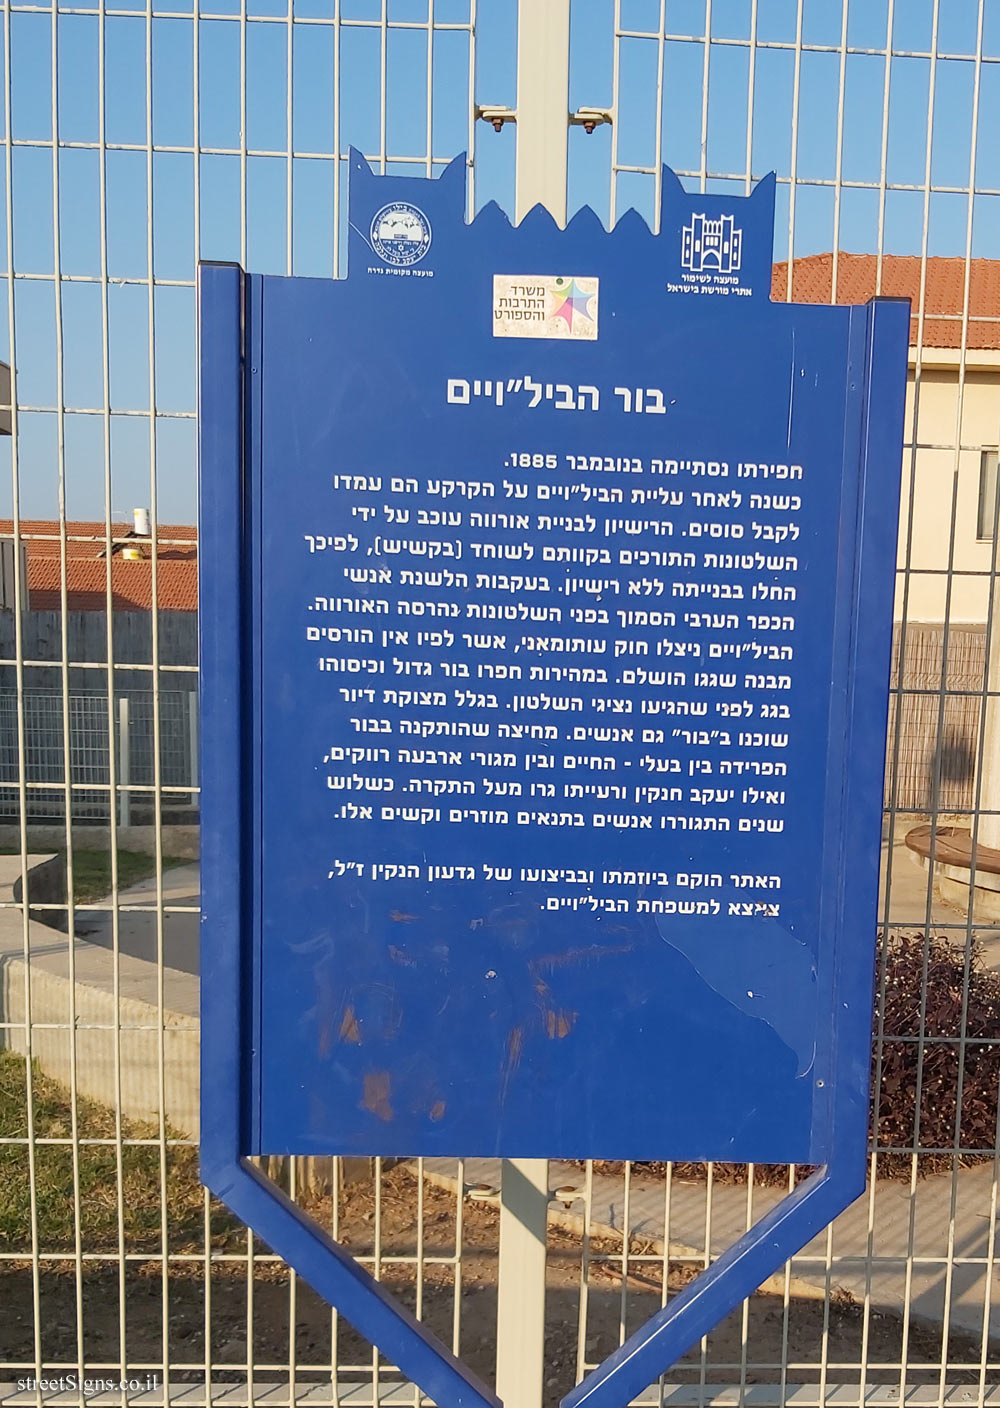 Gedera - Heritage Sites in Israel - The Bilus pit